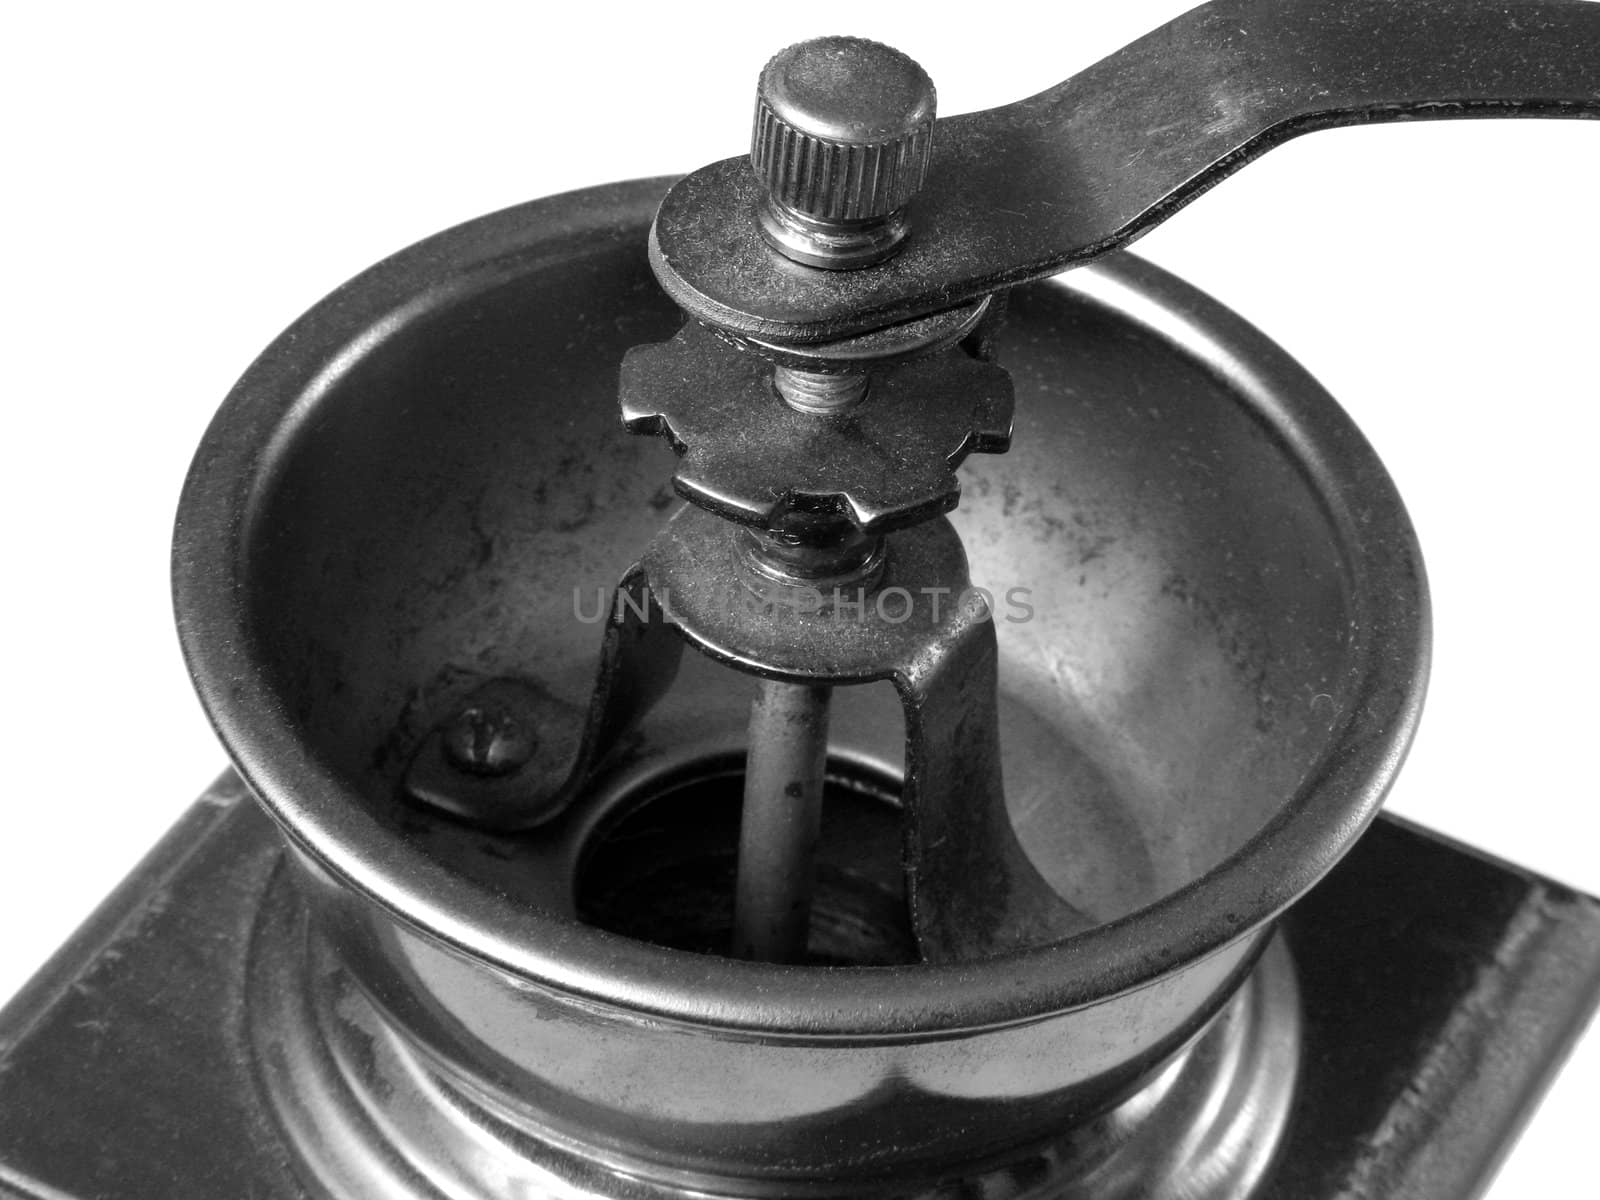 Old coffee grinder detail. B&W